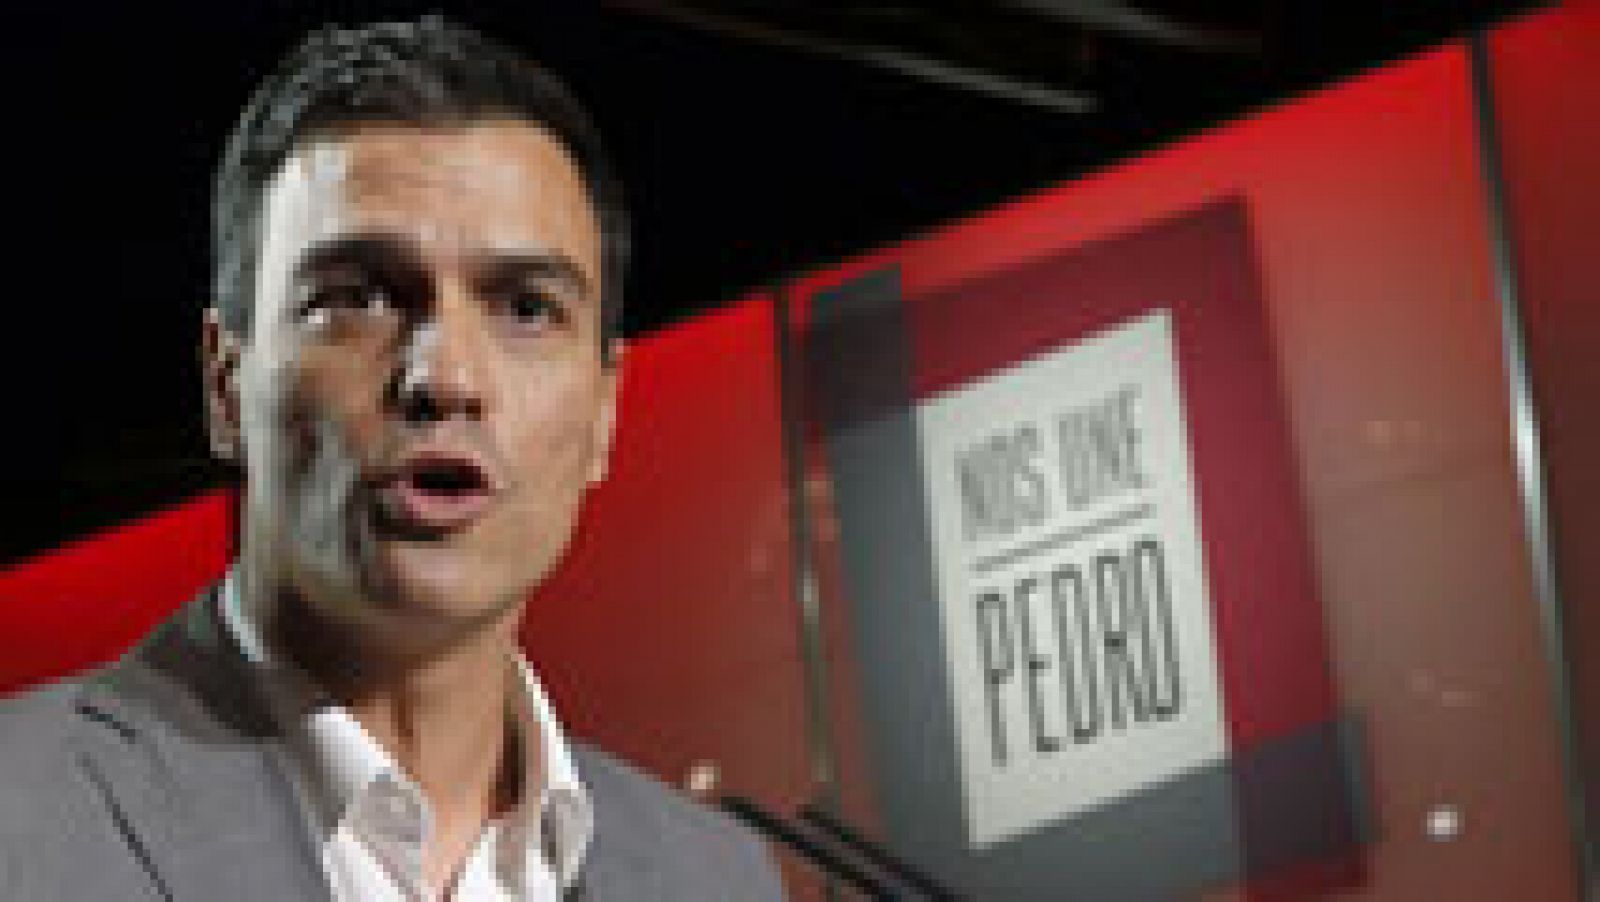 Se presenta una plataforma para apoyar a Pedro Sánchez bajo el lema "Nos une Pedro"